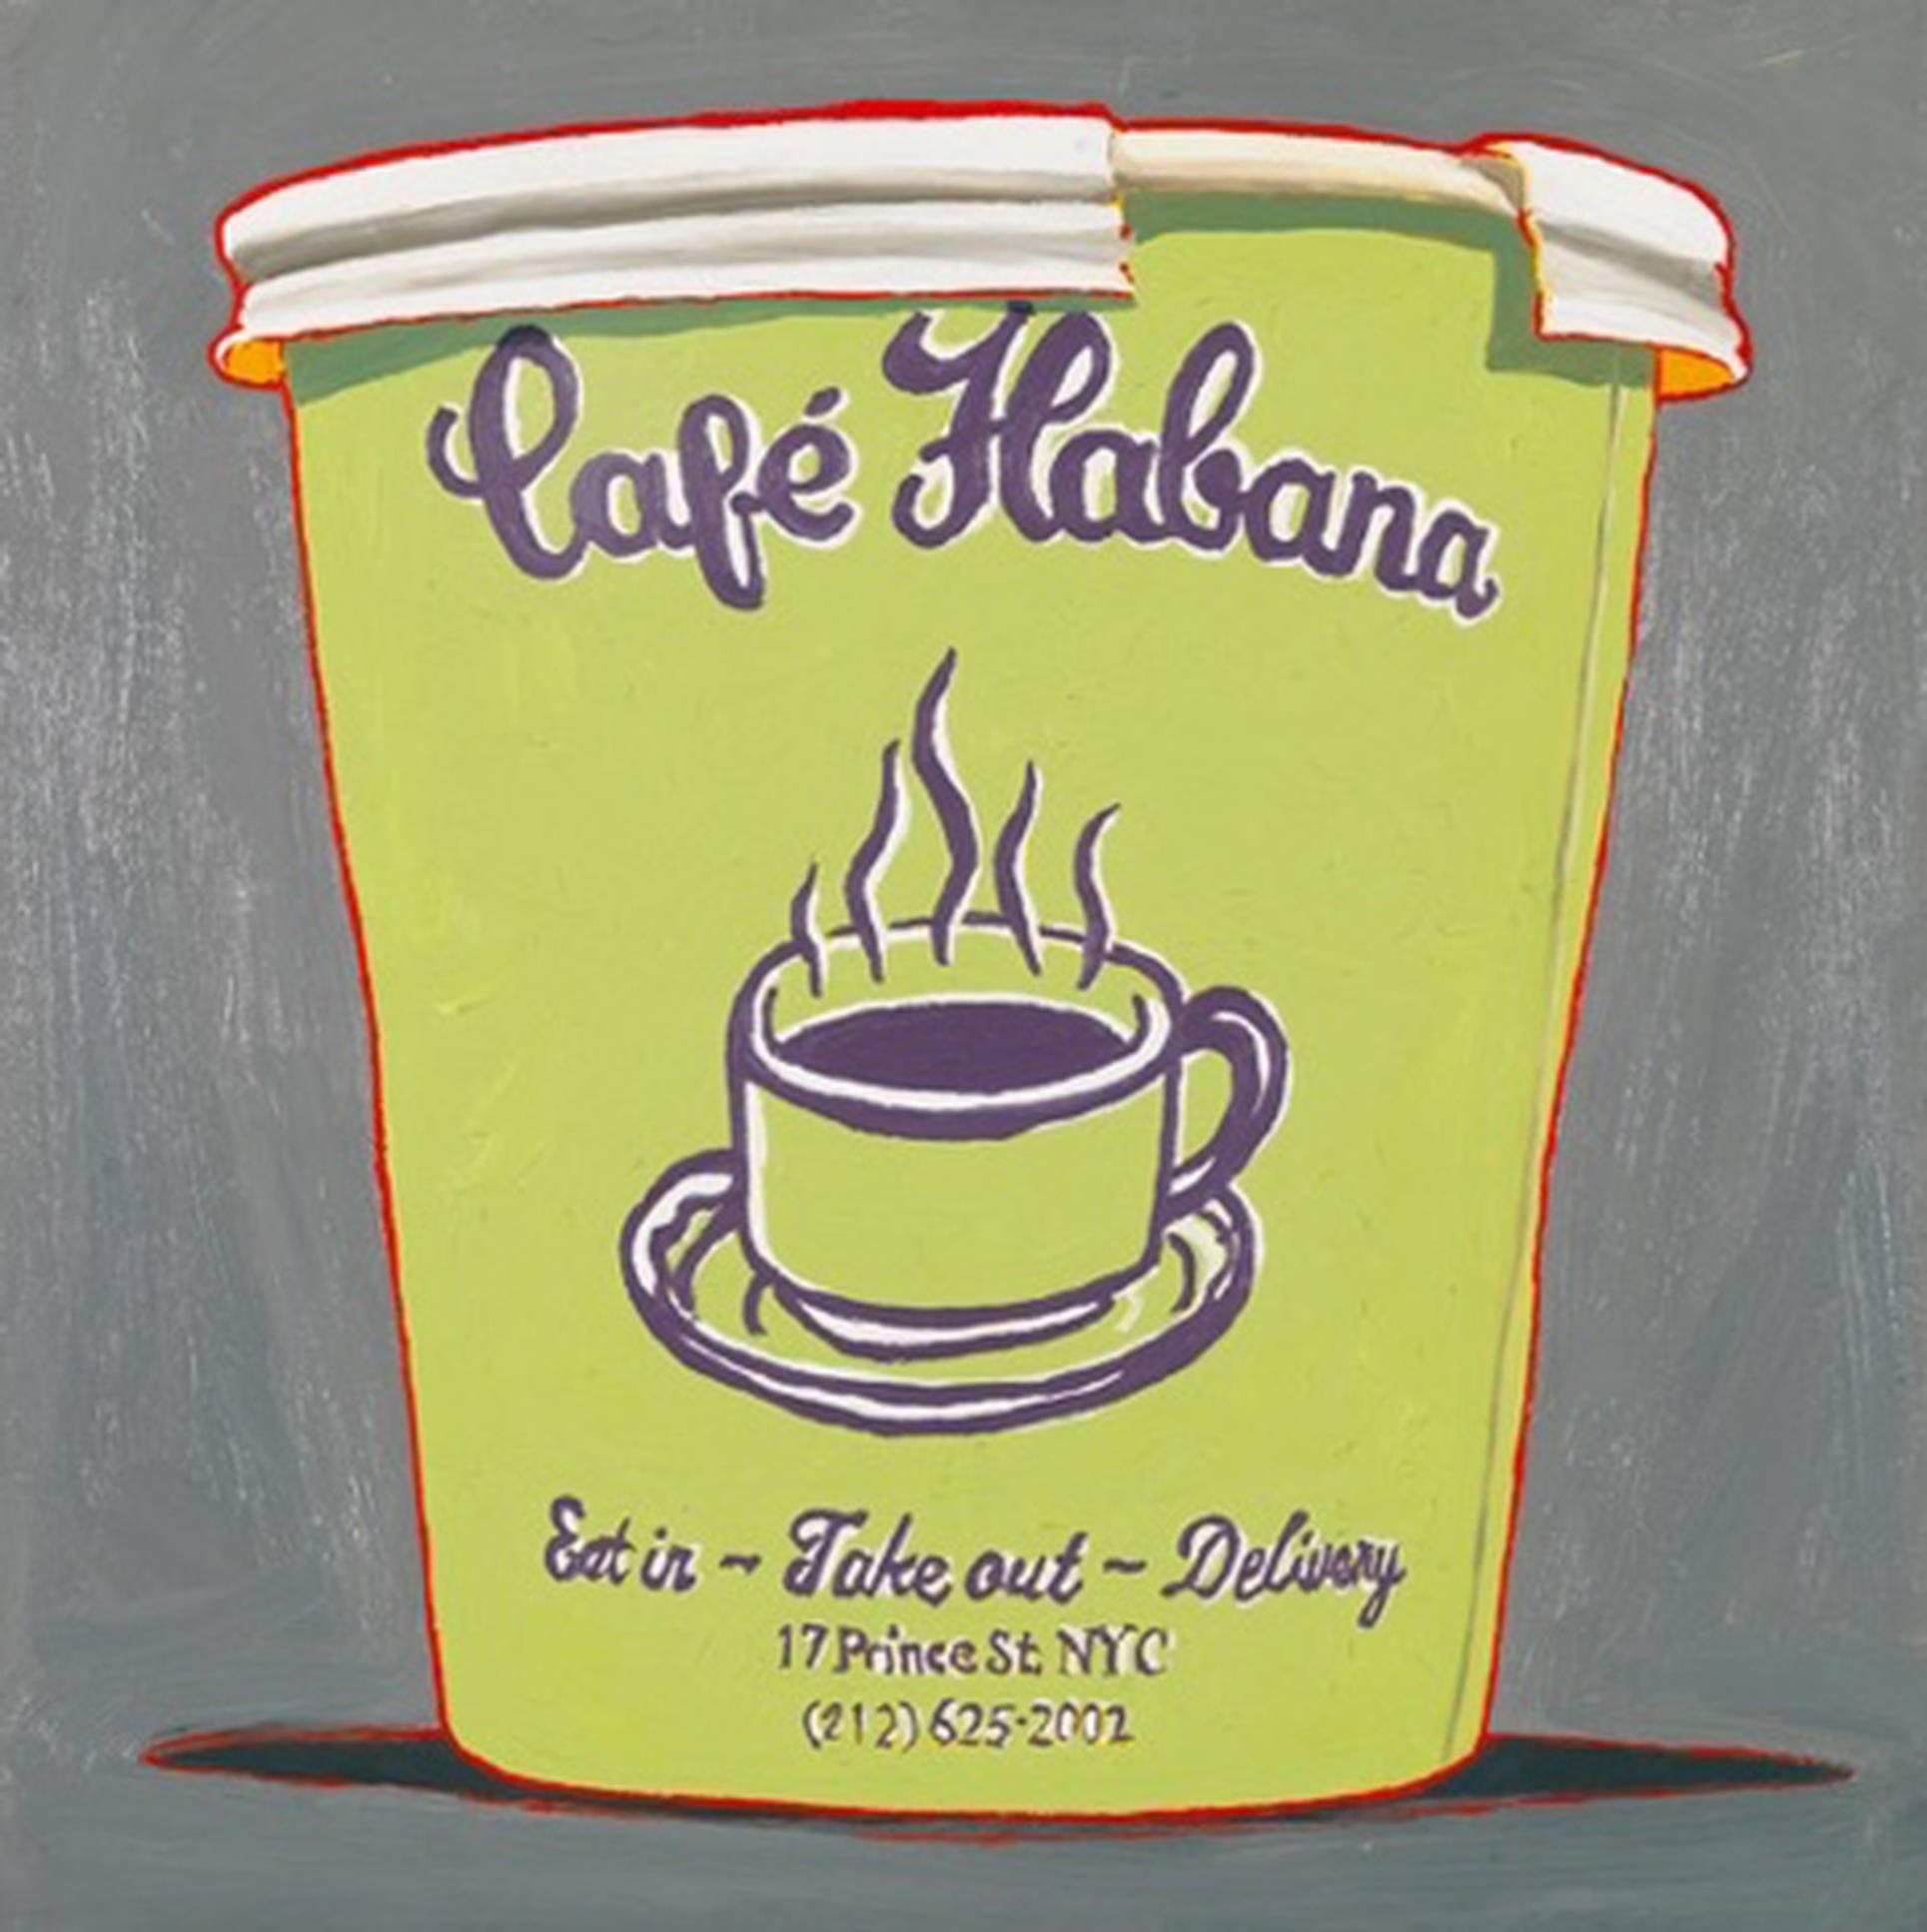 Cafe Habana